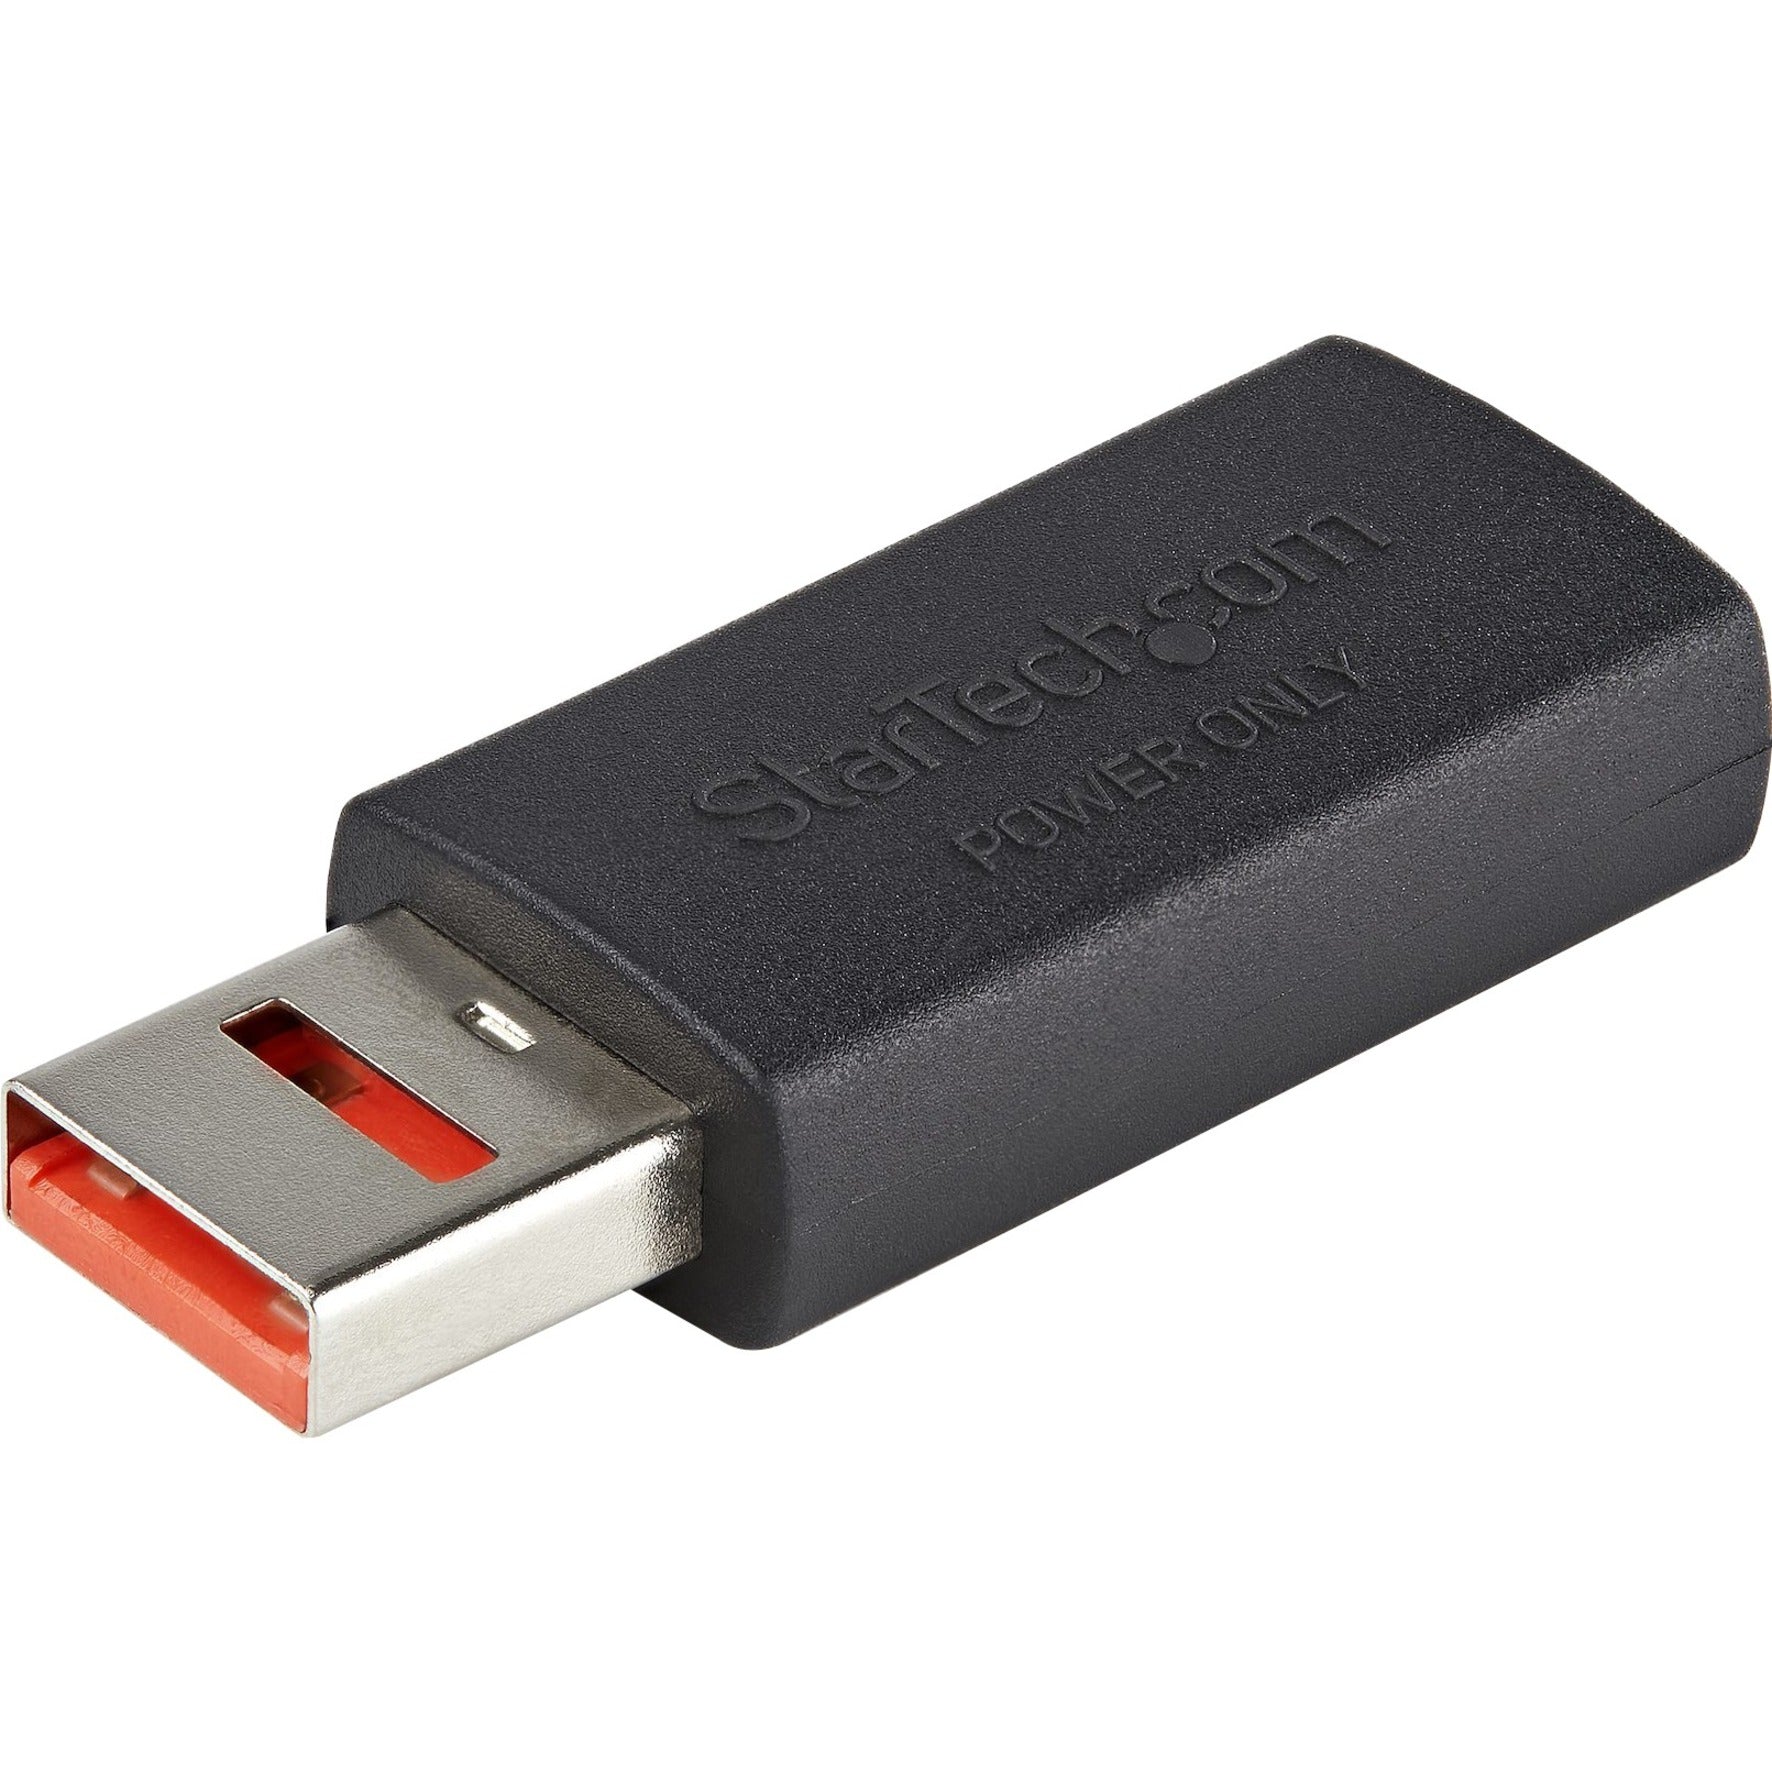 StarTech.com USBSCHAAMF Adaptateur de transfert de données USB Adaptateur de charge/blocage de données USB-A mâle/femelle pour charge uniquement pour téléphone/tablette